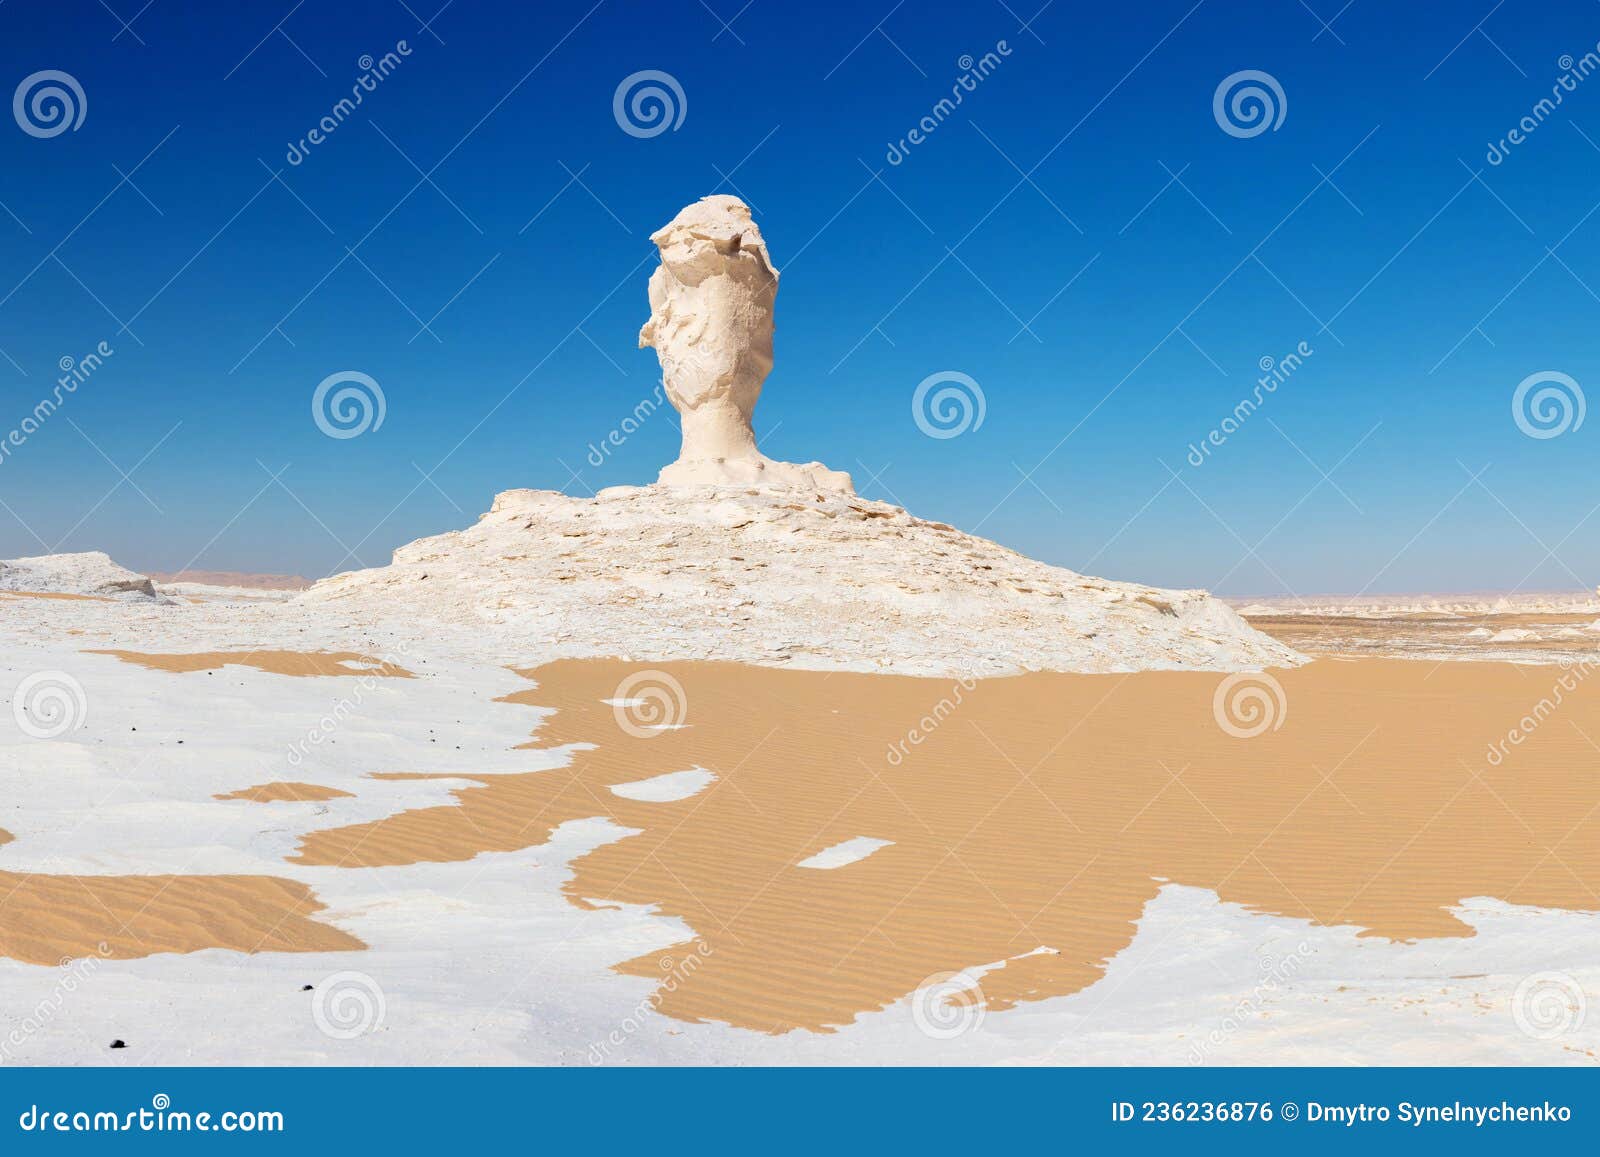 非洲乍得恩内迪沙漠蘑菇状砂岩塔 库存照片. 图片 包括有 高潮, 测试, 横向, 划桨者, 风景, 小山 - 178602412